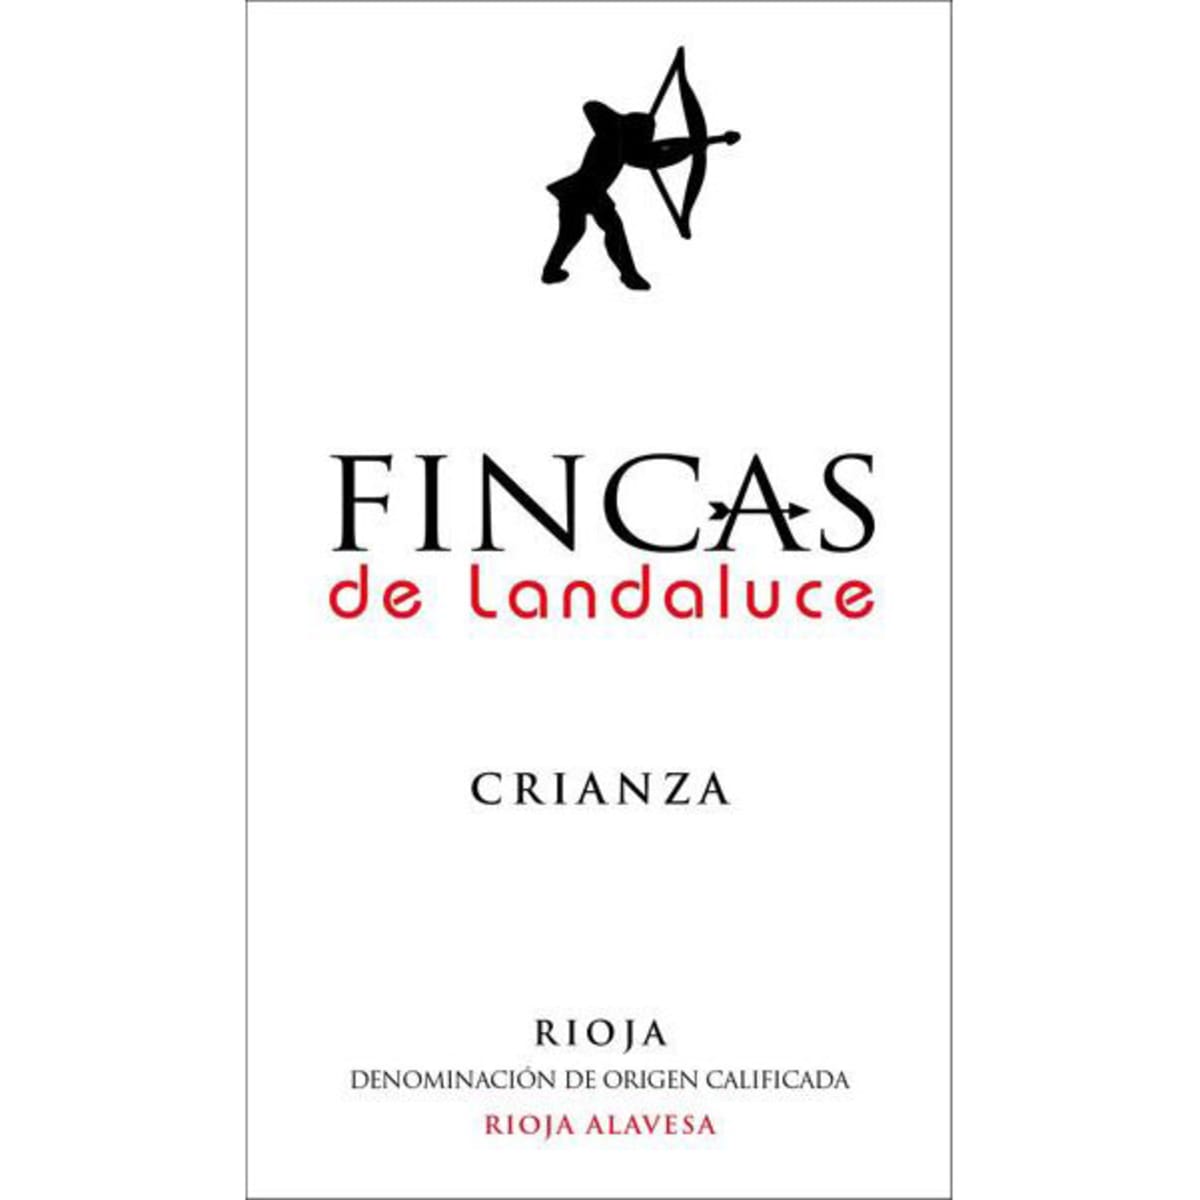 Bodegas Landaluce Fincas de Landaluce Crianza 2011 Front Label